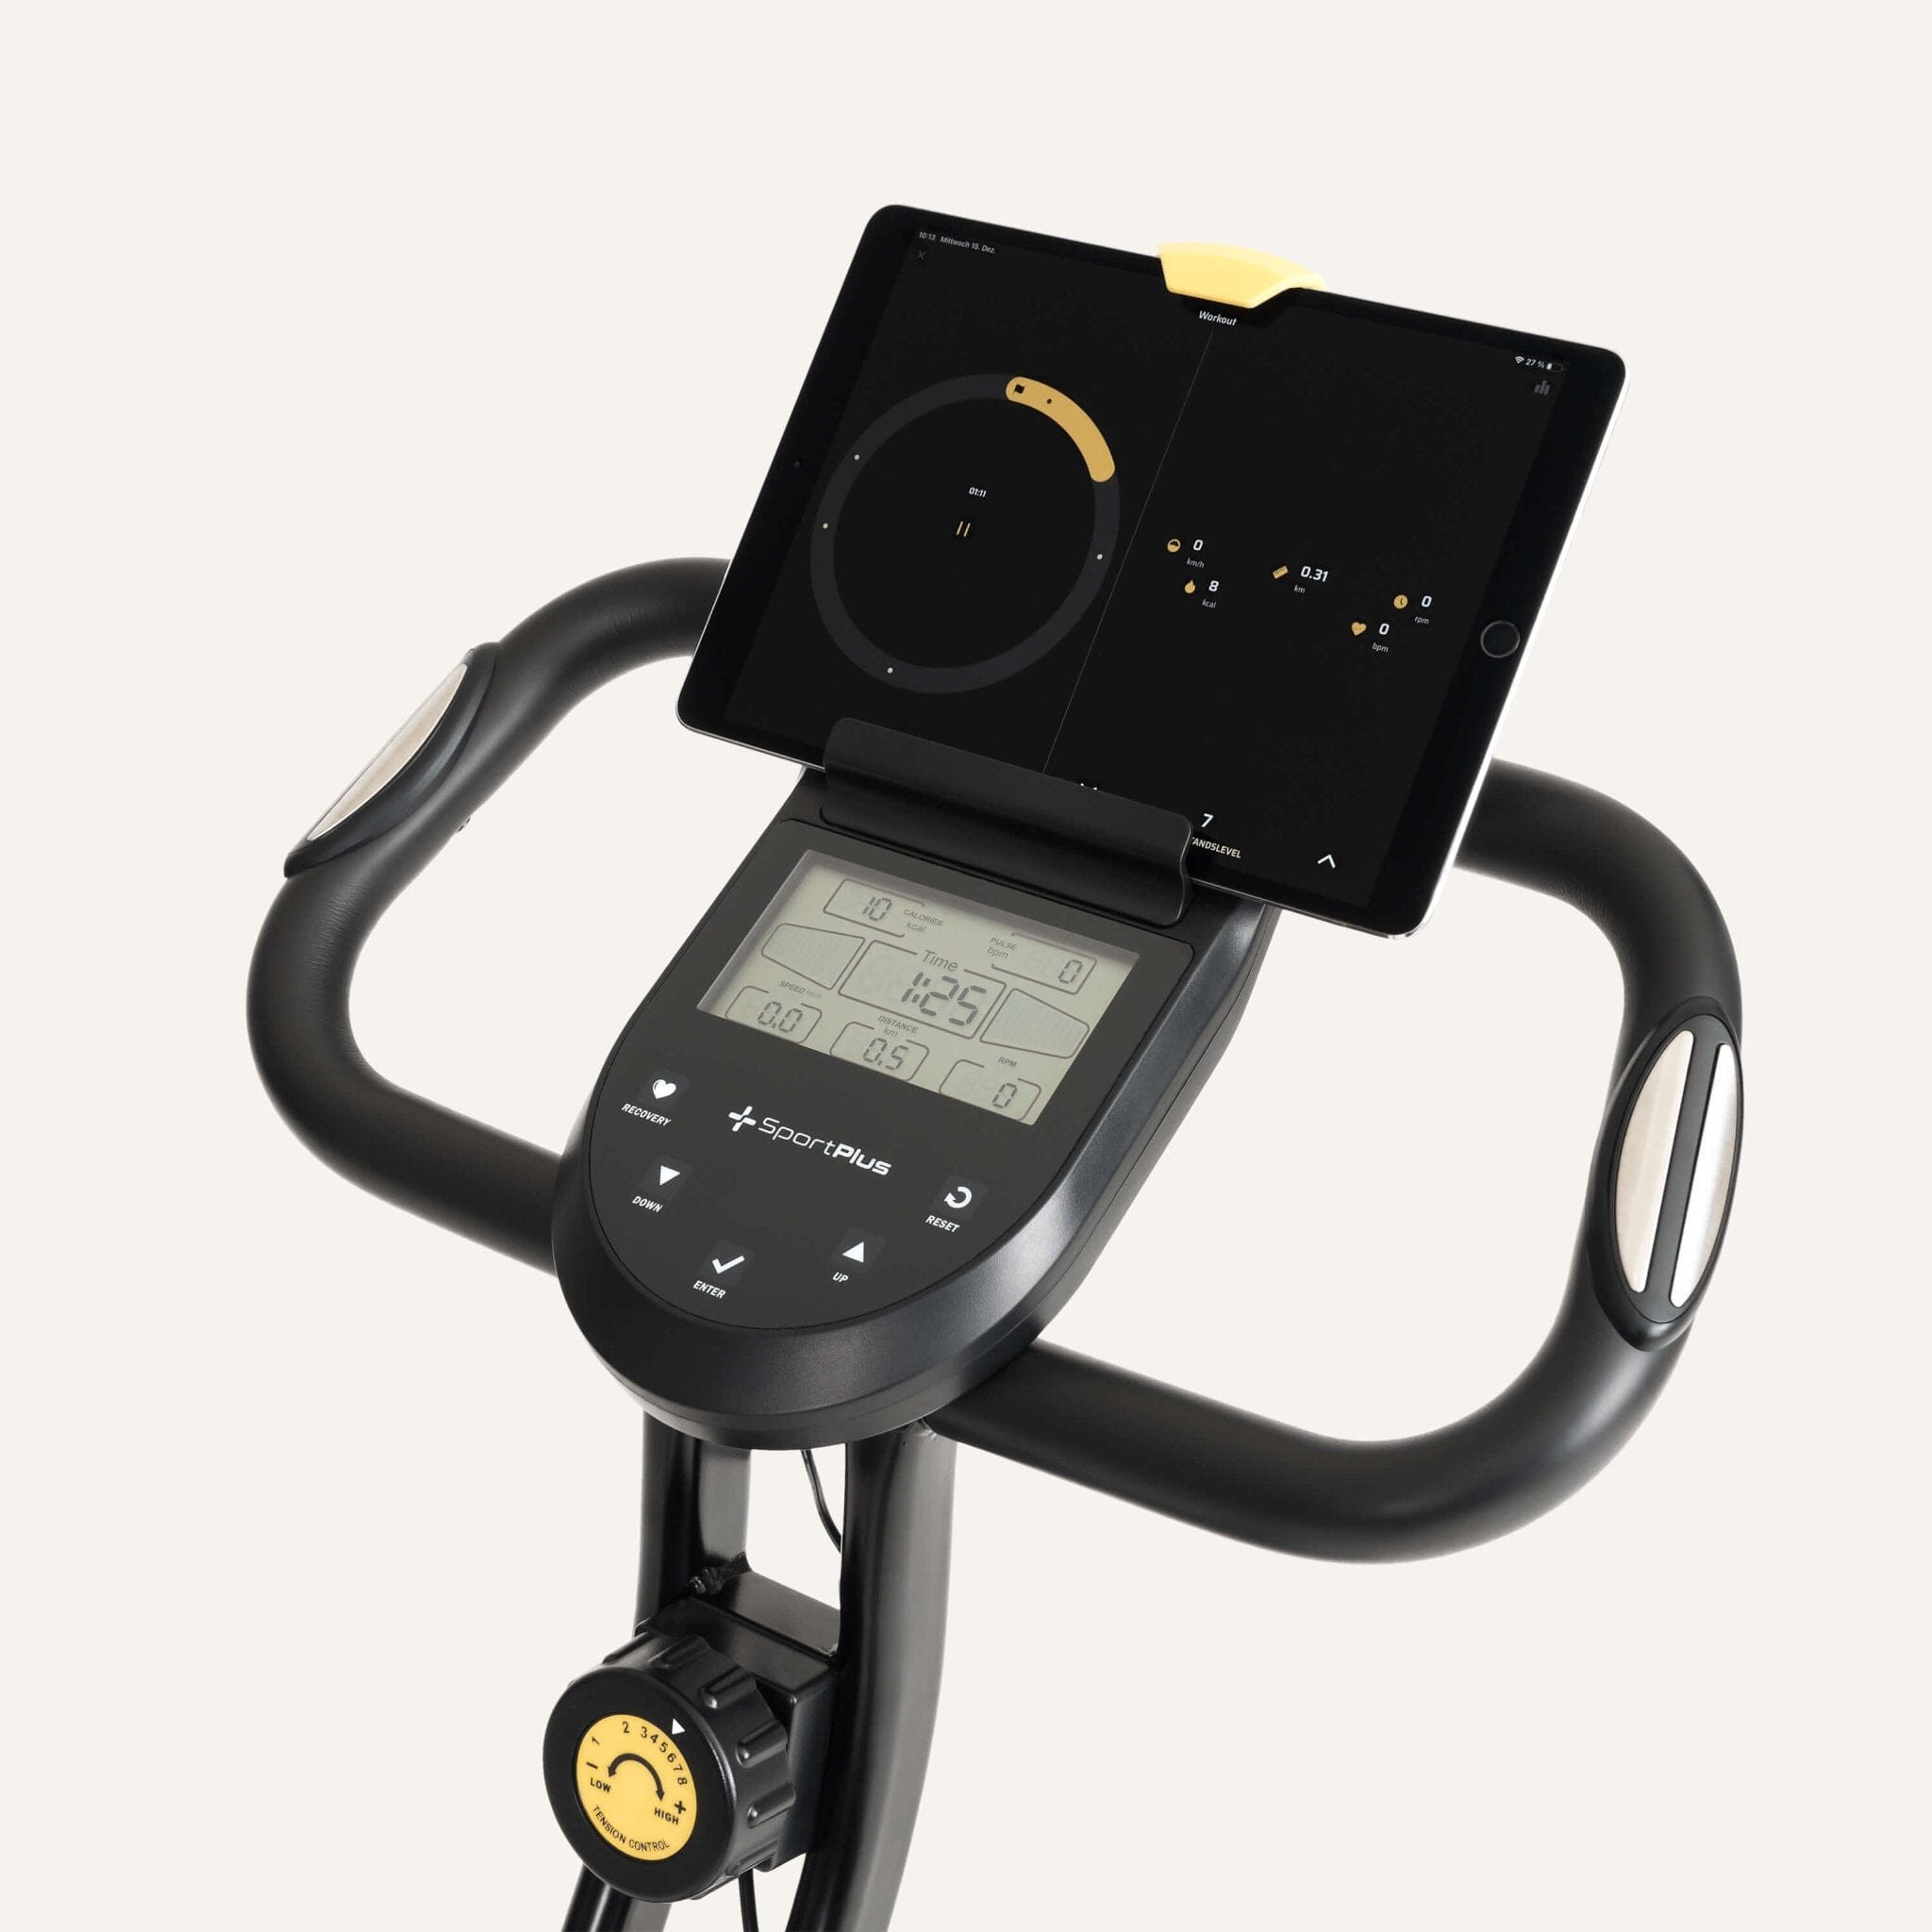 Klappbarer Heimtrainer (X-Bike) mit App-Kompatibilität SP-HT-1200-iE SportPlus 